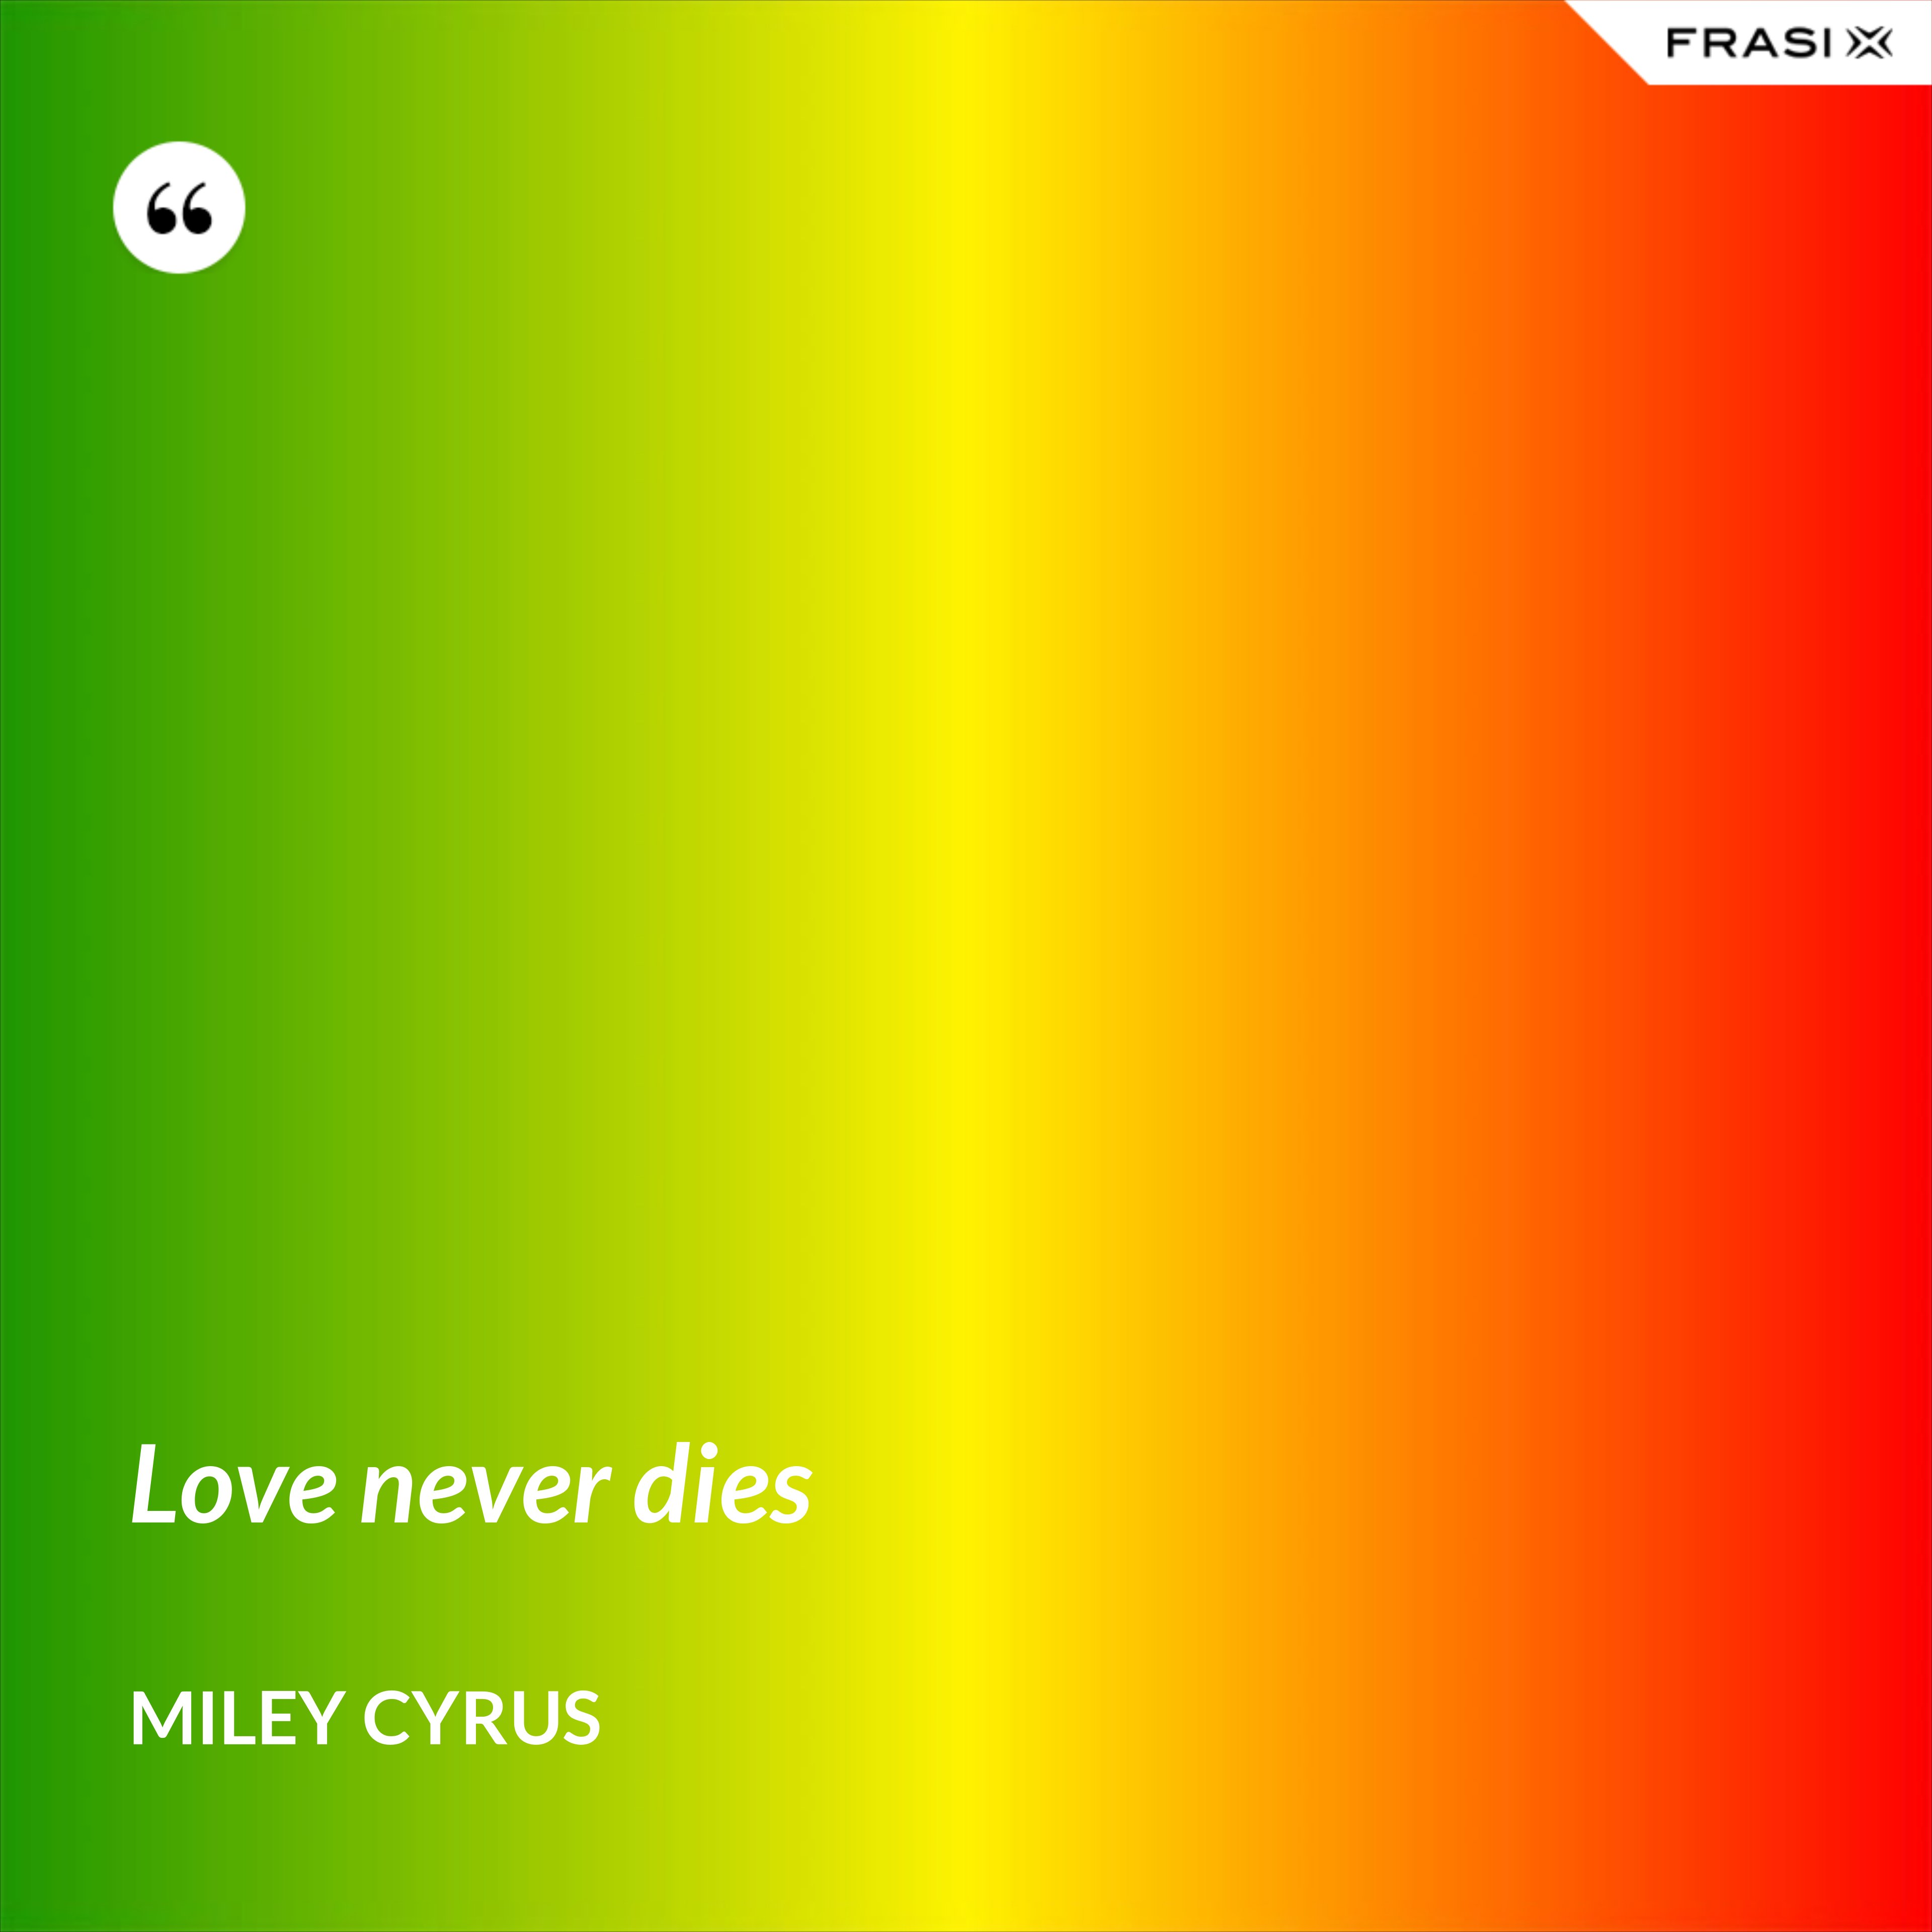 Love never dies - Miley Cyrus